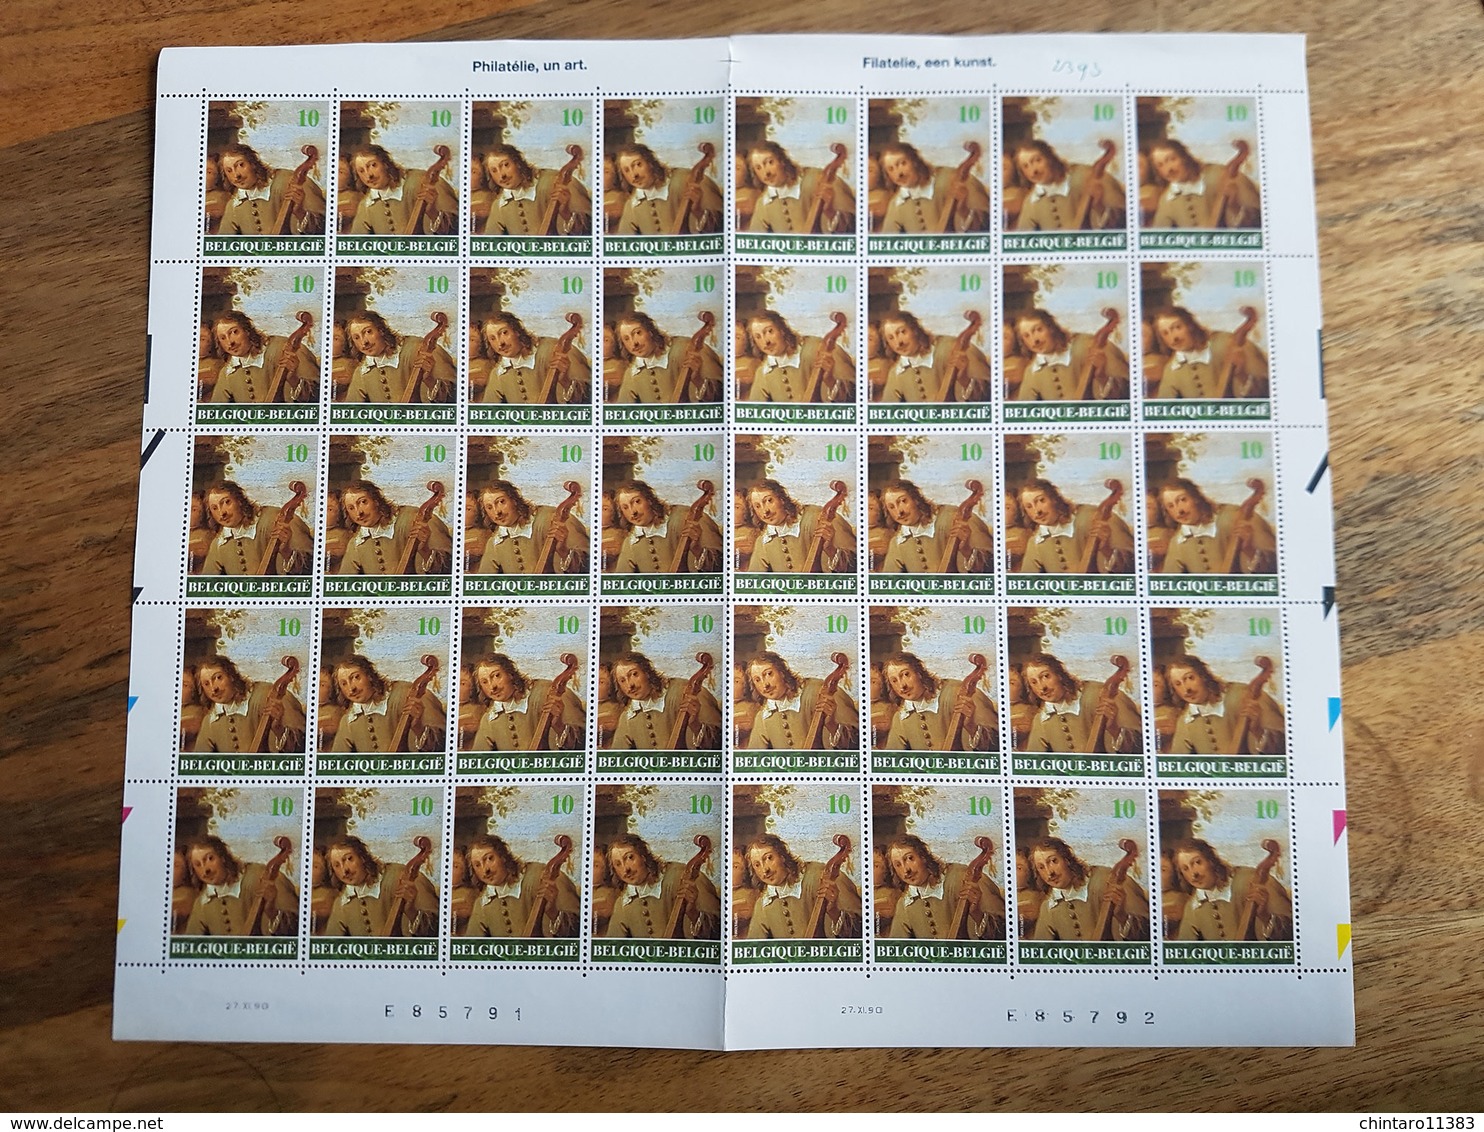 Lot feuilles complètes de timbres Belgique - Année 1990